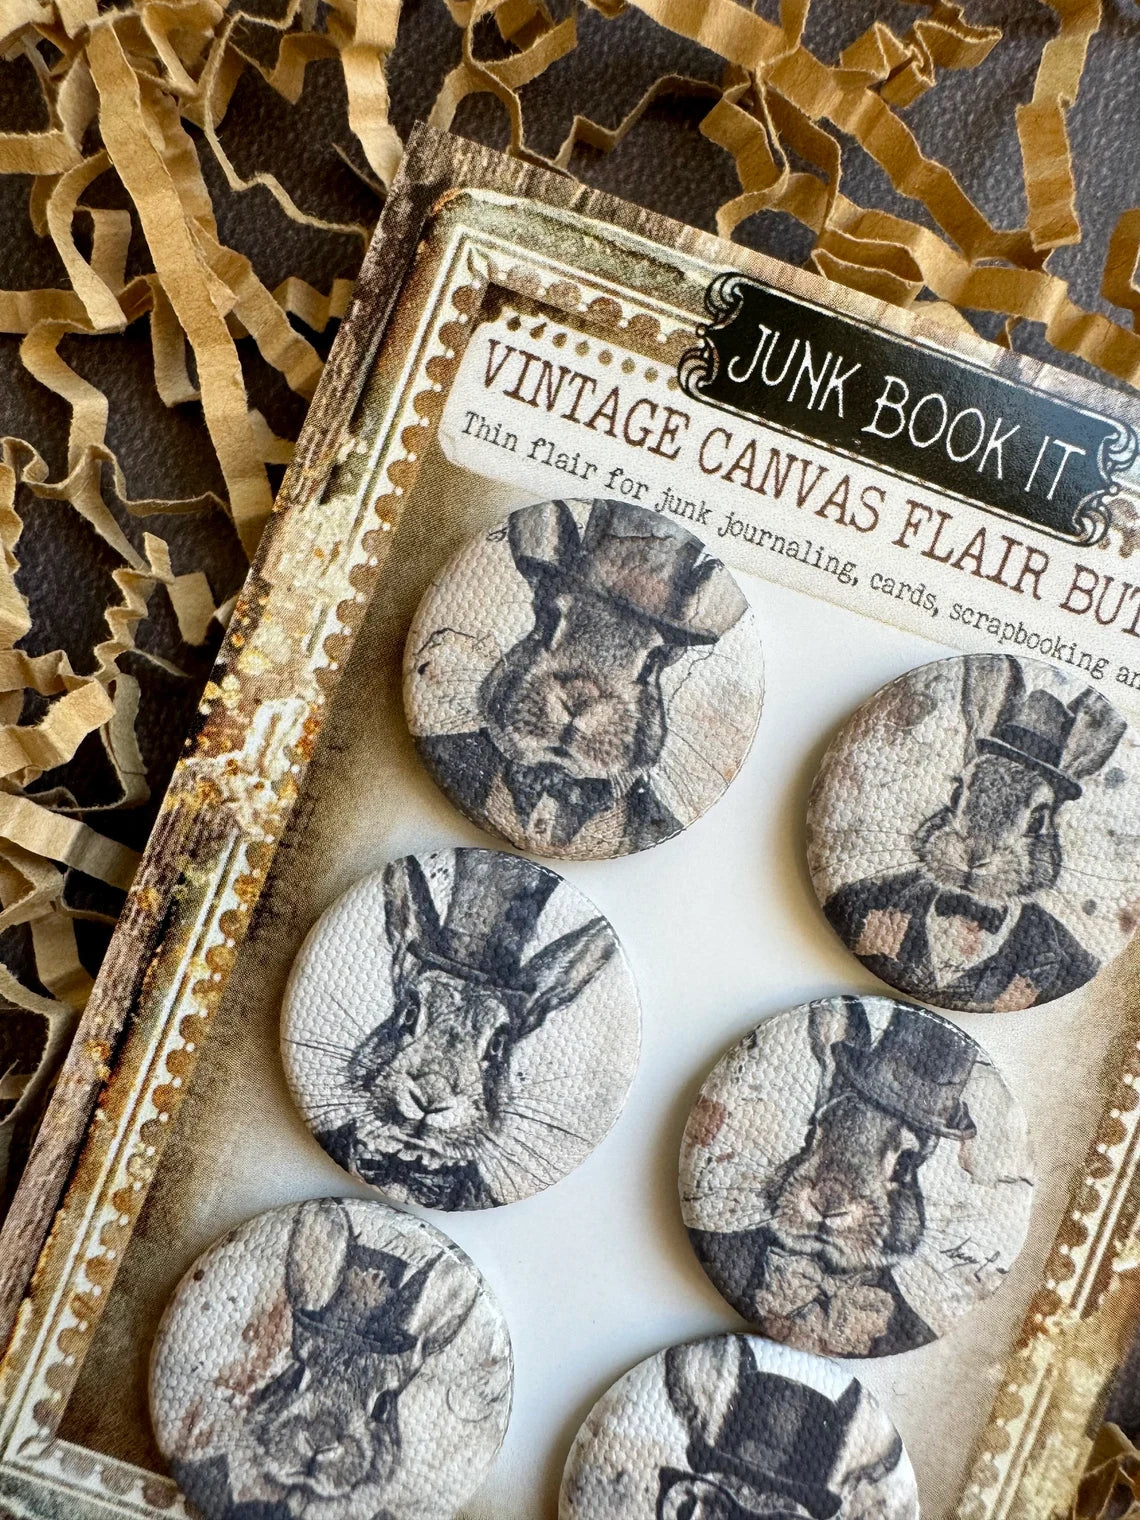 Vintage Dapper Rabbit Canvas Flair Buttons